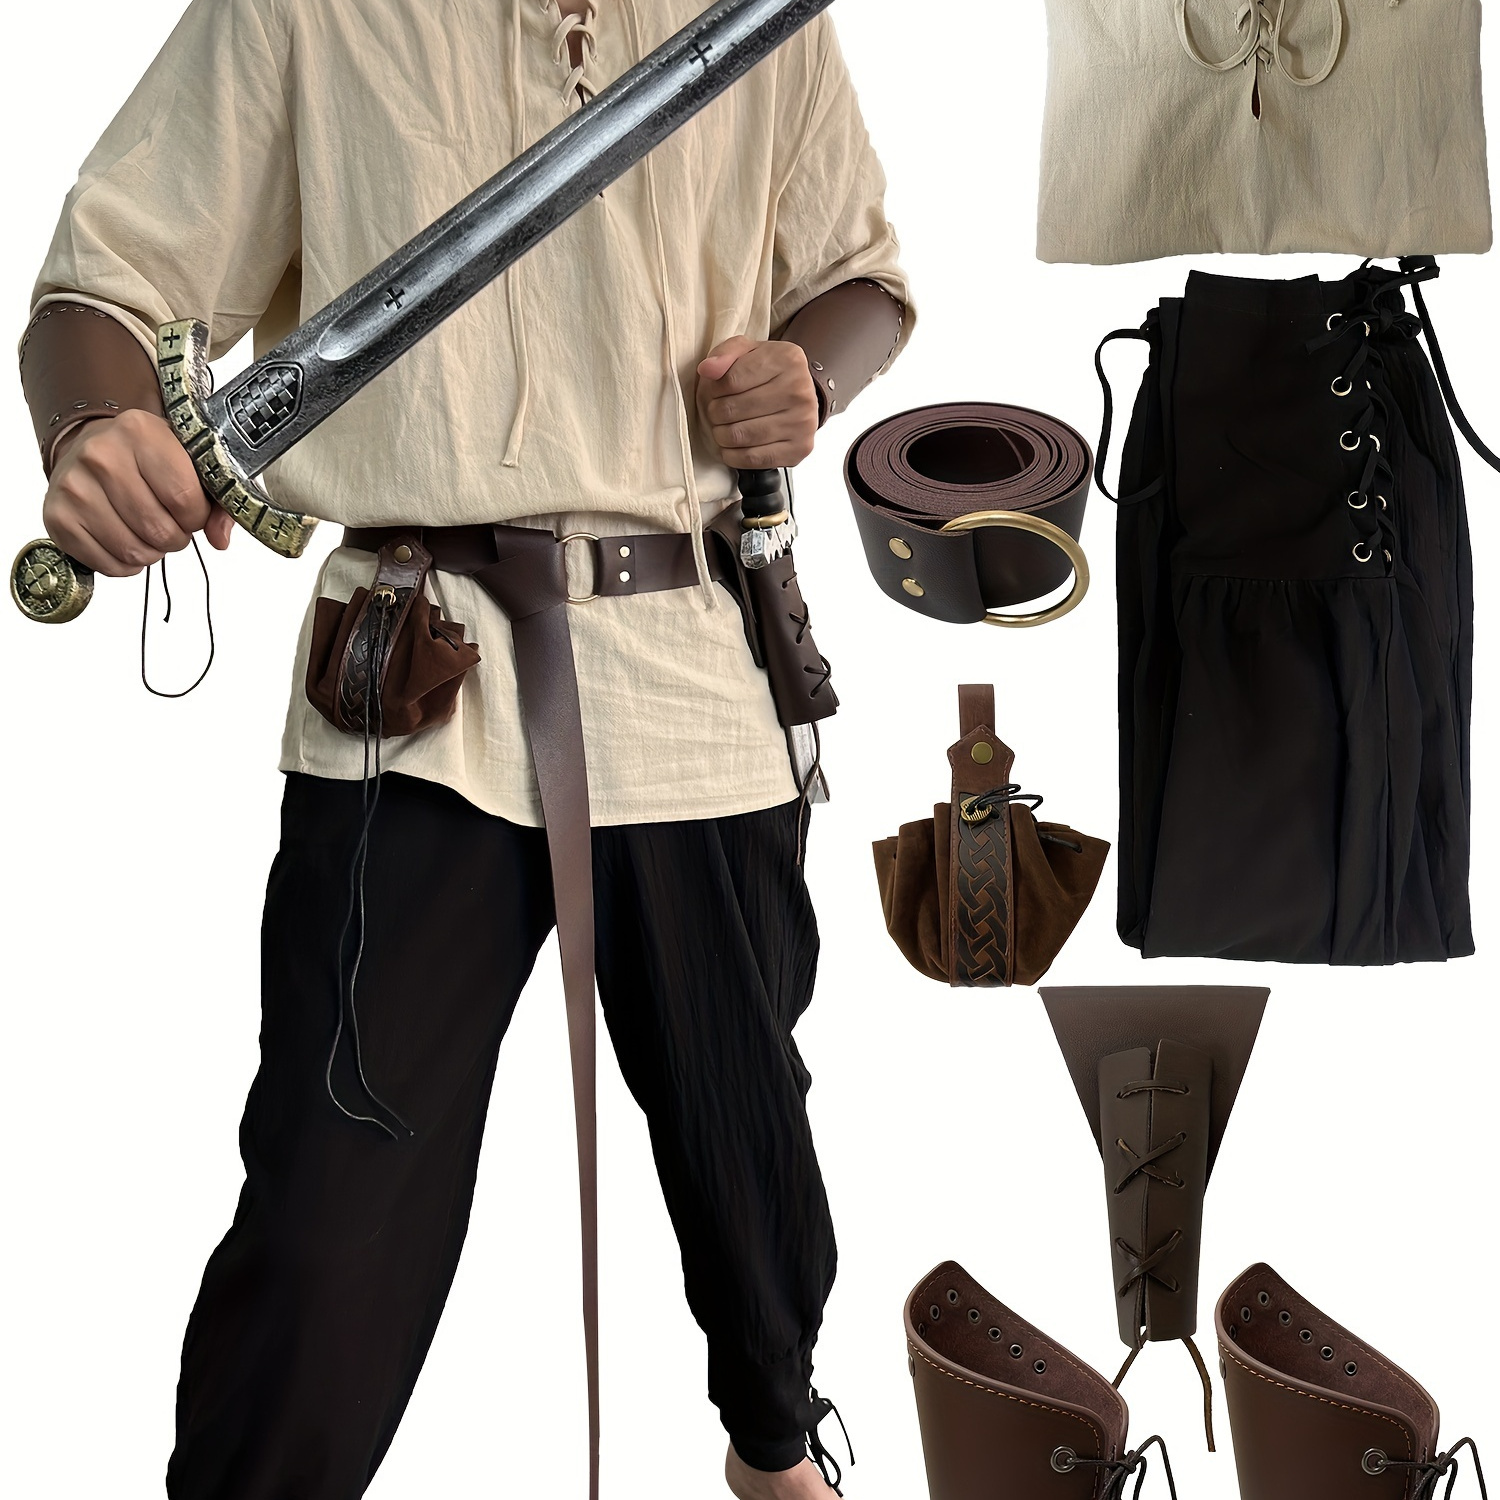 

7pcs/set Renaissance Costume Men Medieval Viking Costume Men Renaissance Accessories Halloween Costumes For Adults.